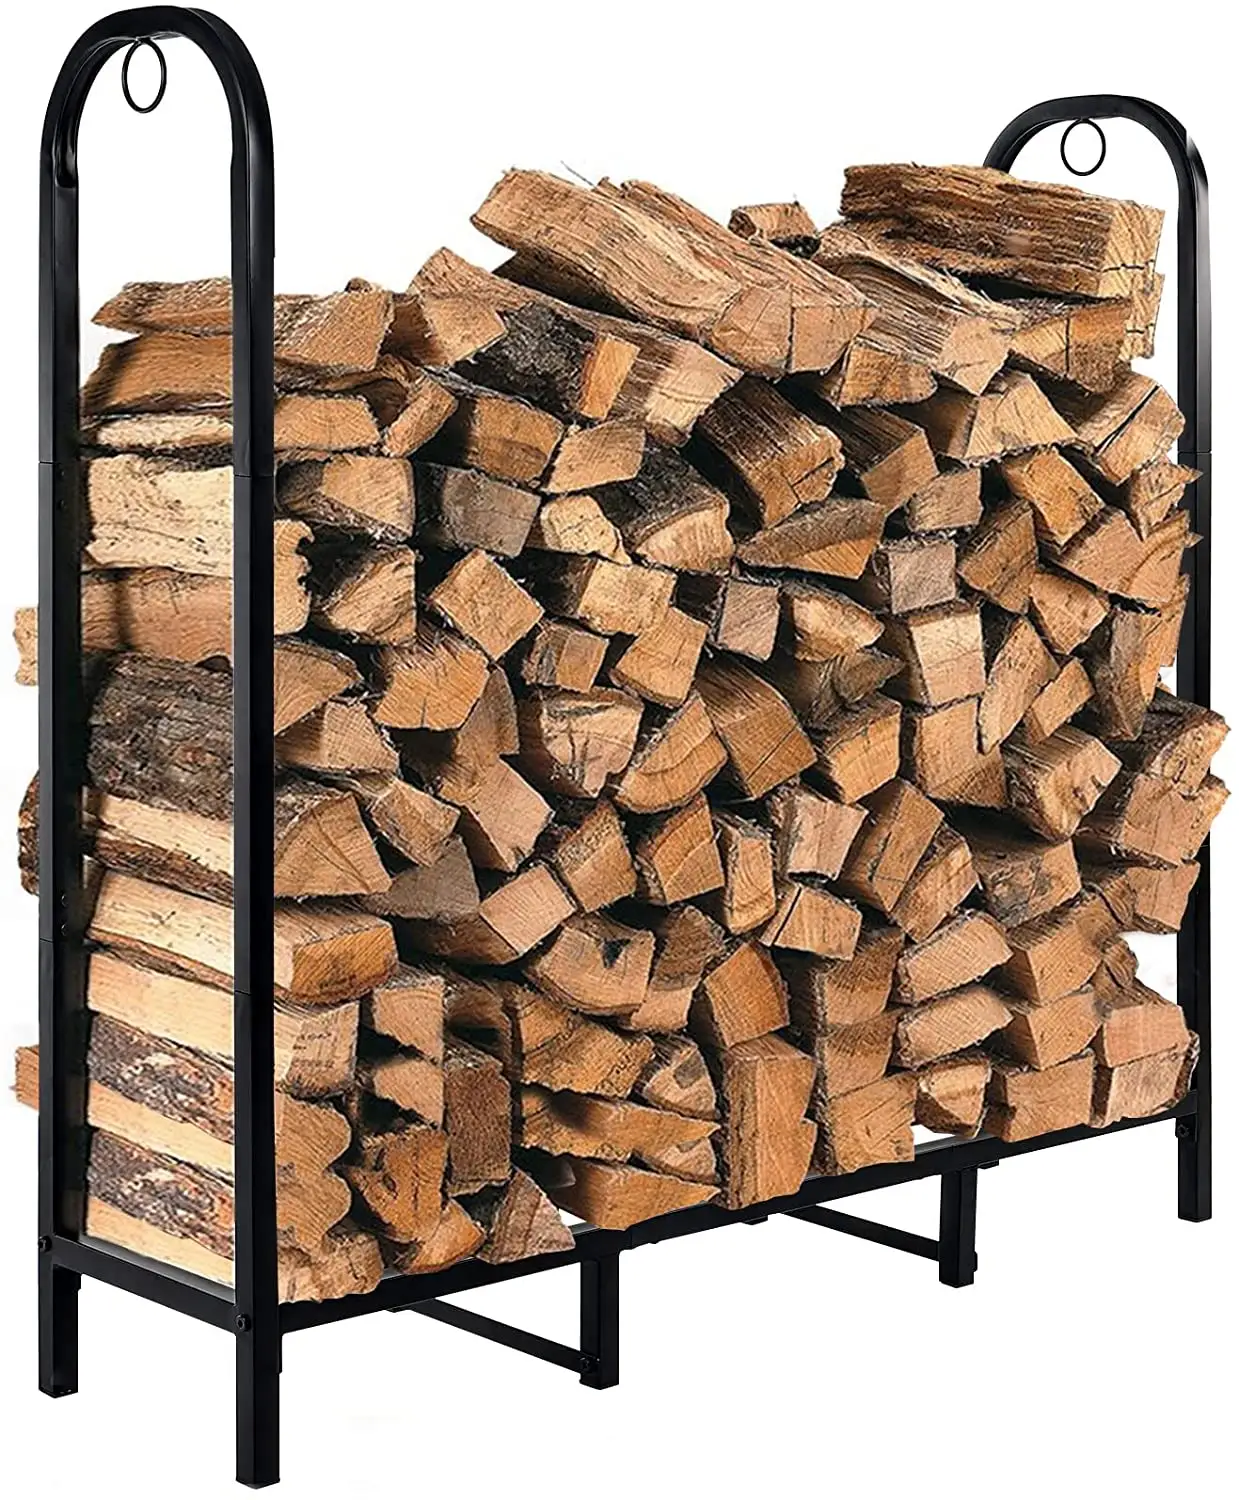 Yakacak odun istif rafı kapalı veya açık ahşap depolama tutucu şömine veya ateş çukuru toz kaplı